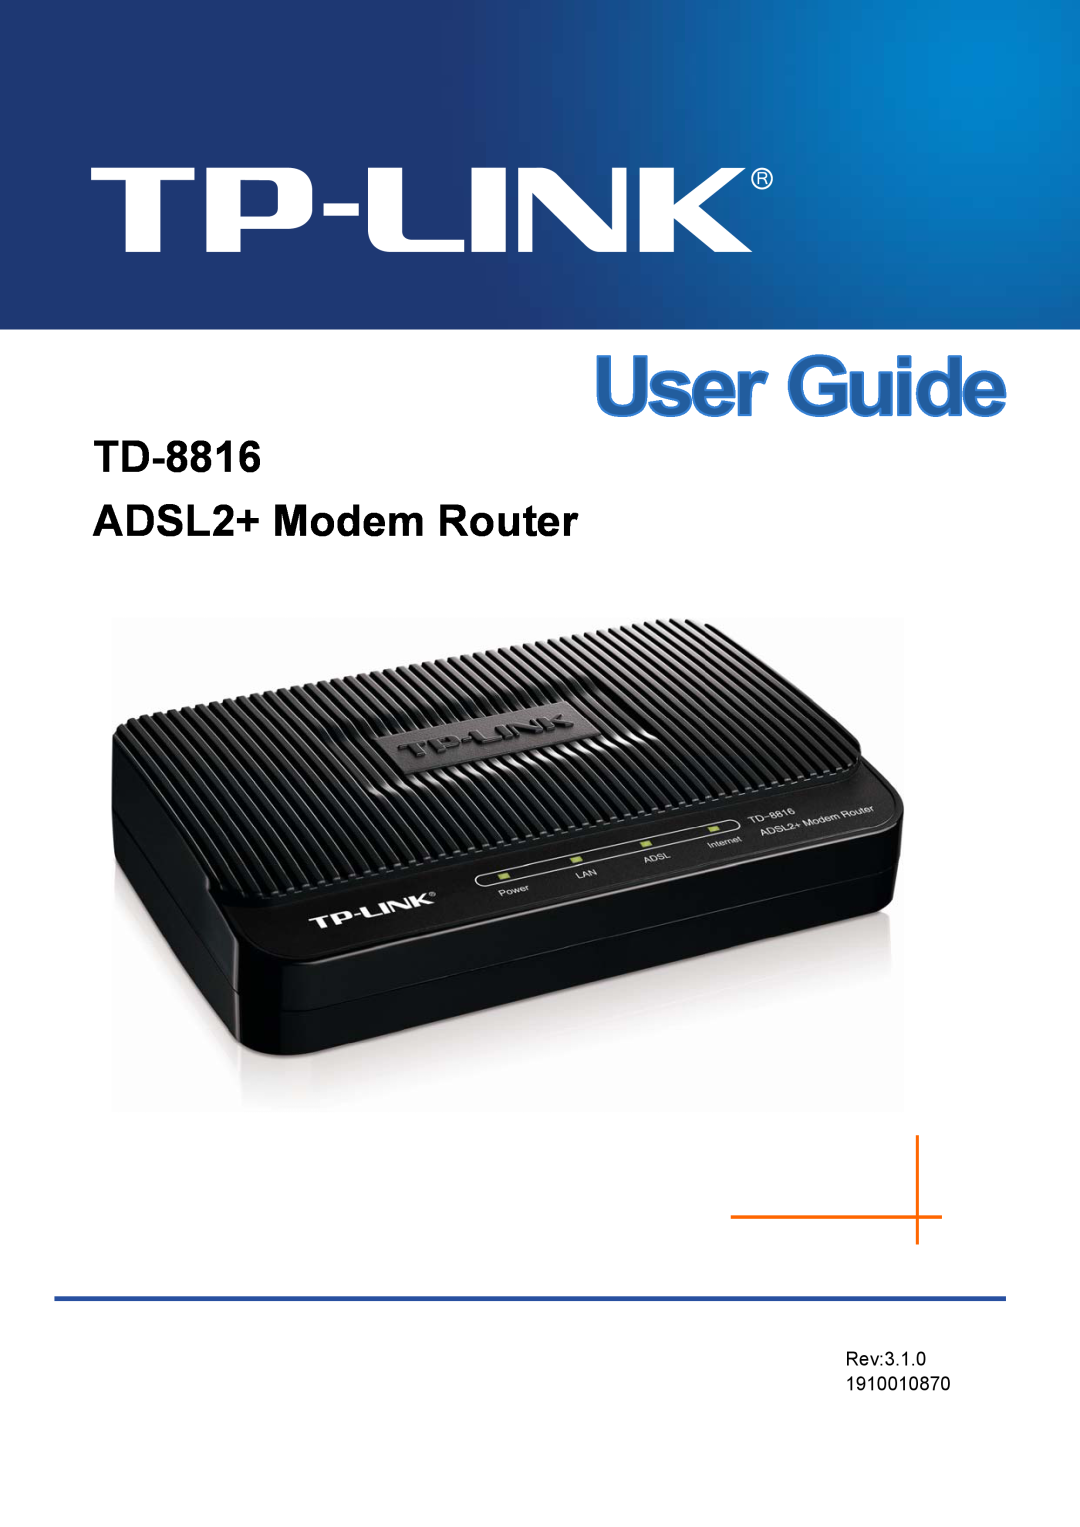 TP-Link manual TD-8816 ADSL2+ Modem Router, Rev2.0.0 1910010536 